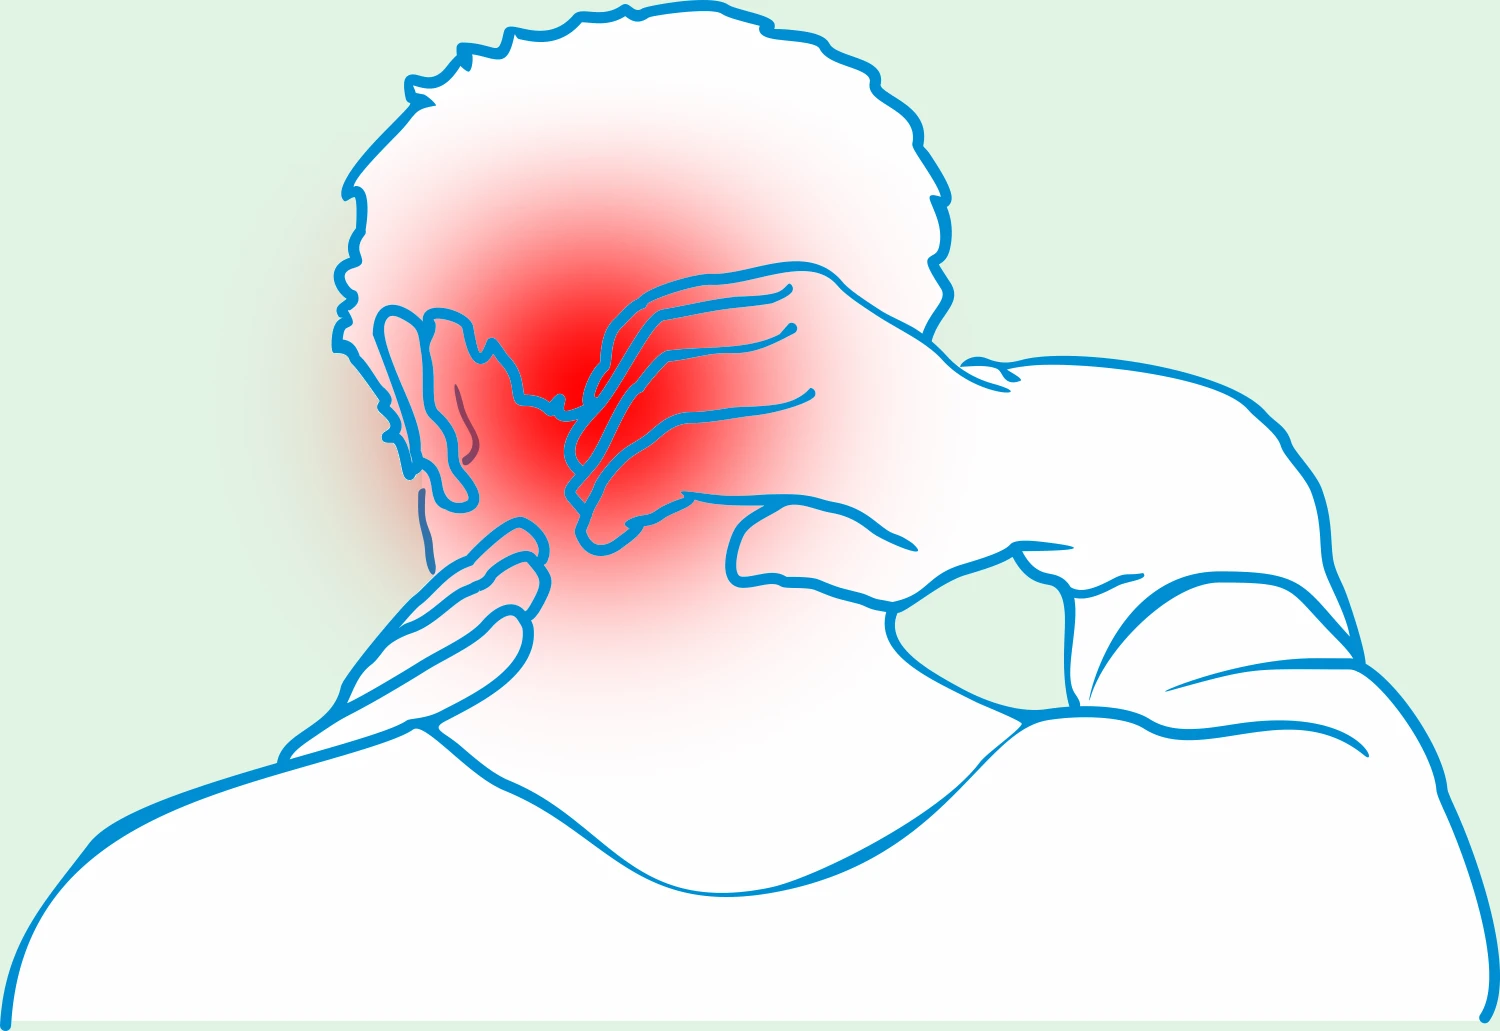 Schmerzen im Hinterkopf, okzipitale Migräne, schmerzender Nacken